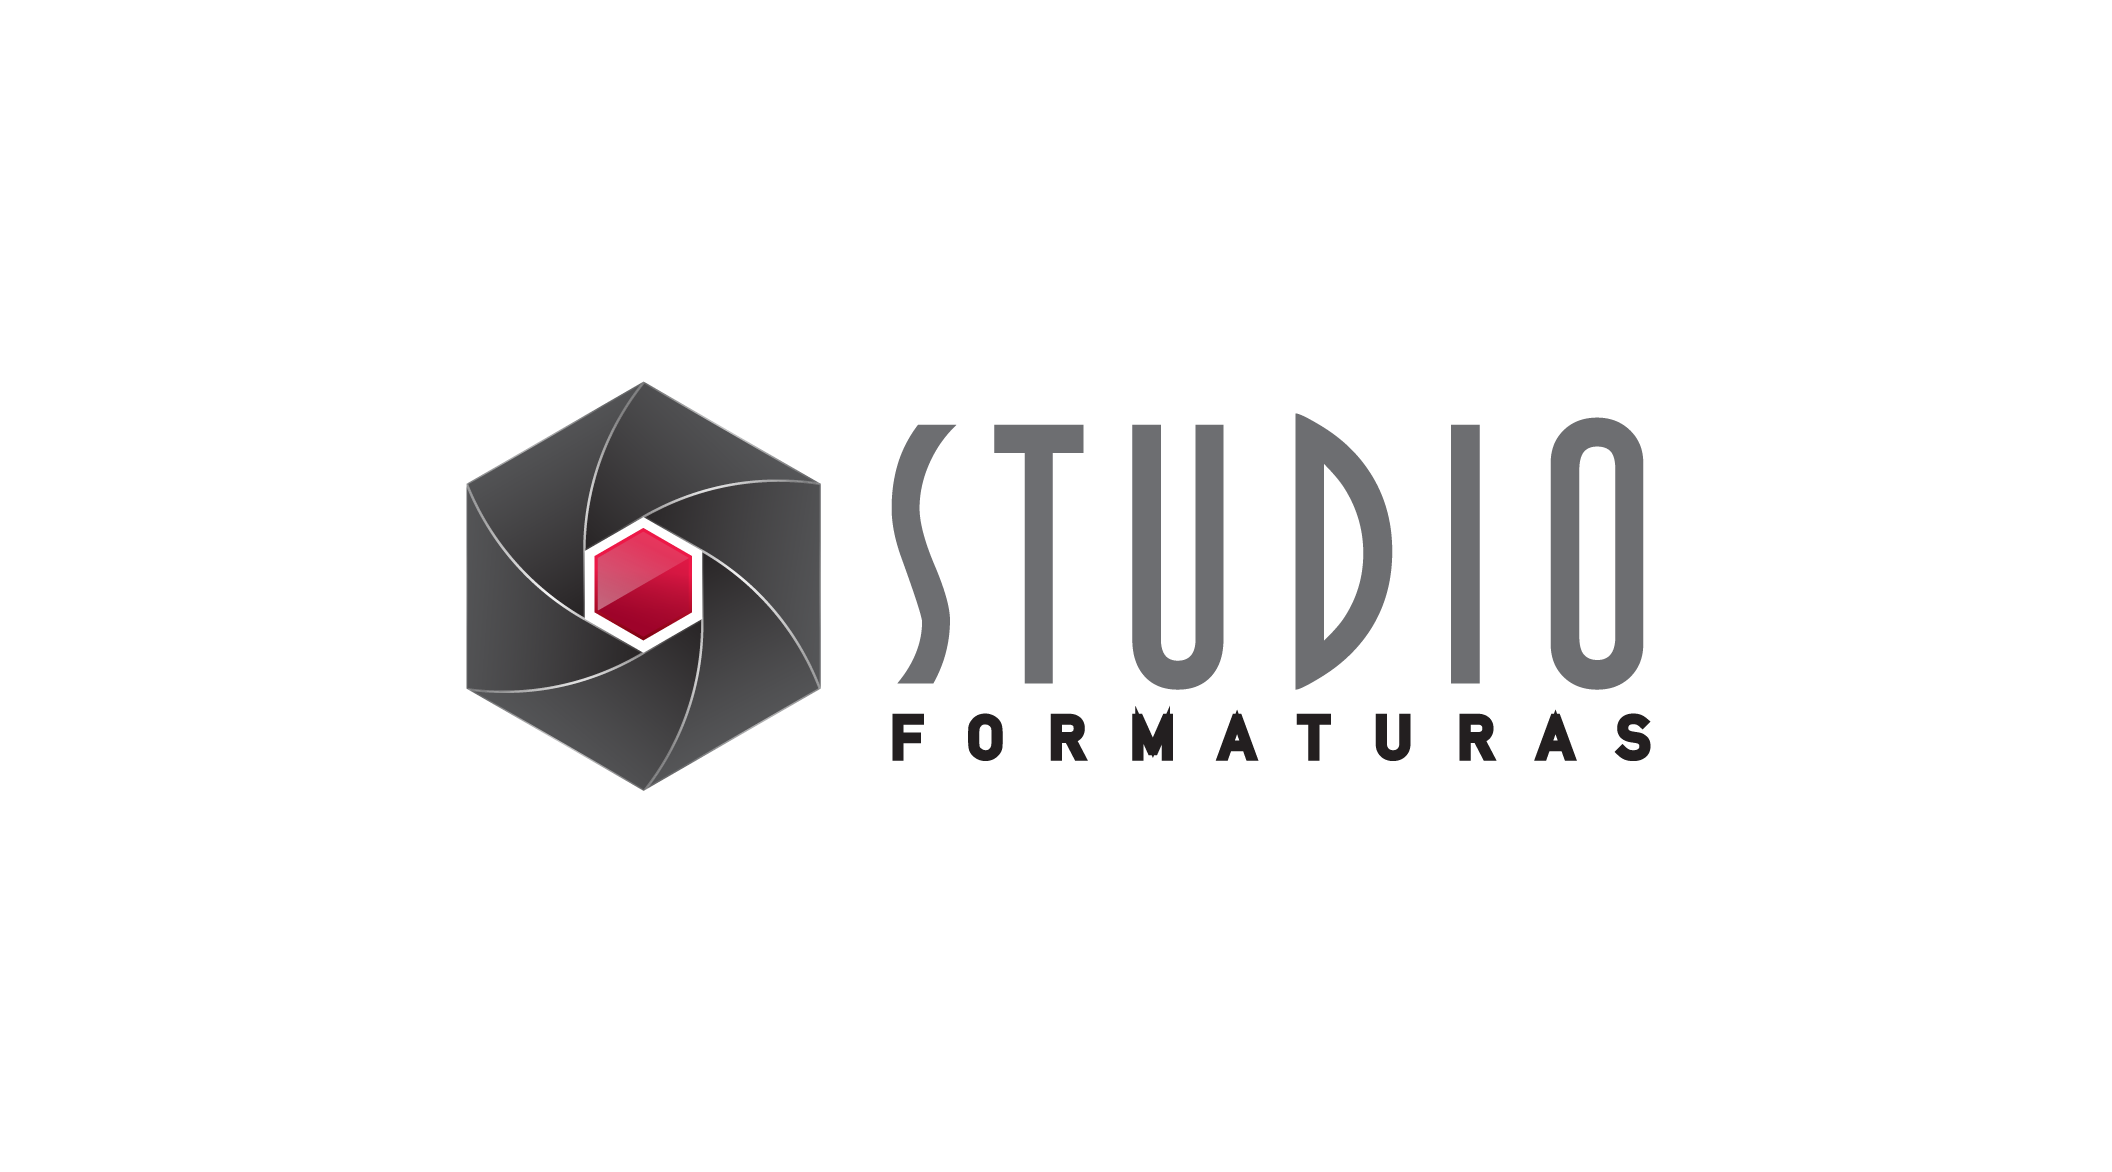 Studio Formaturas